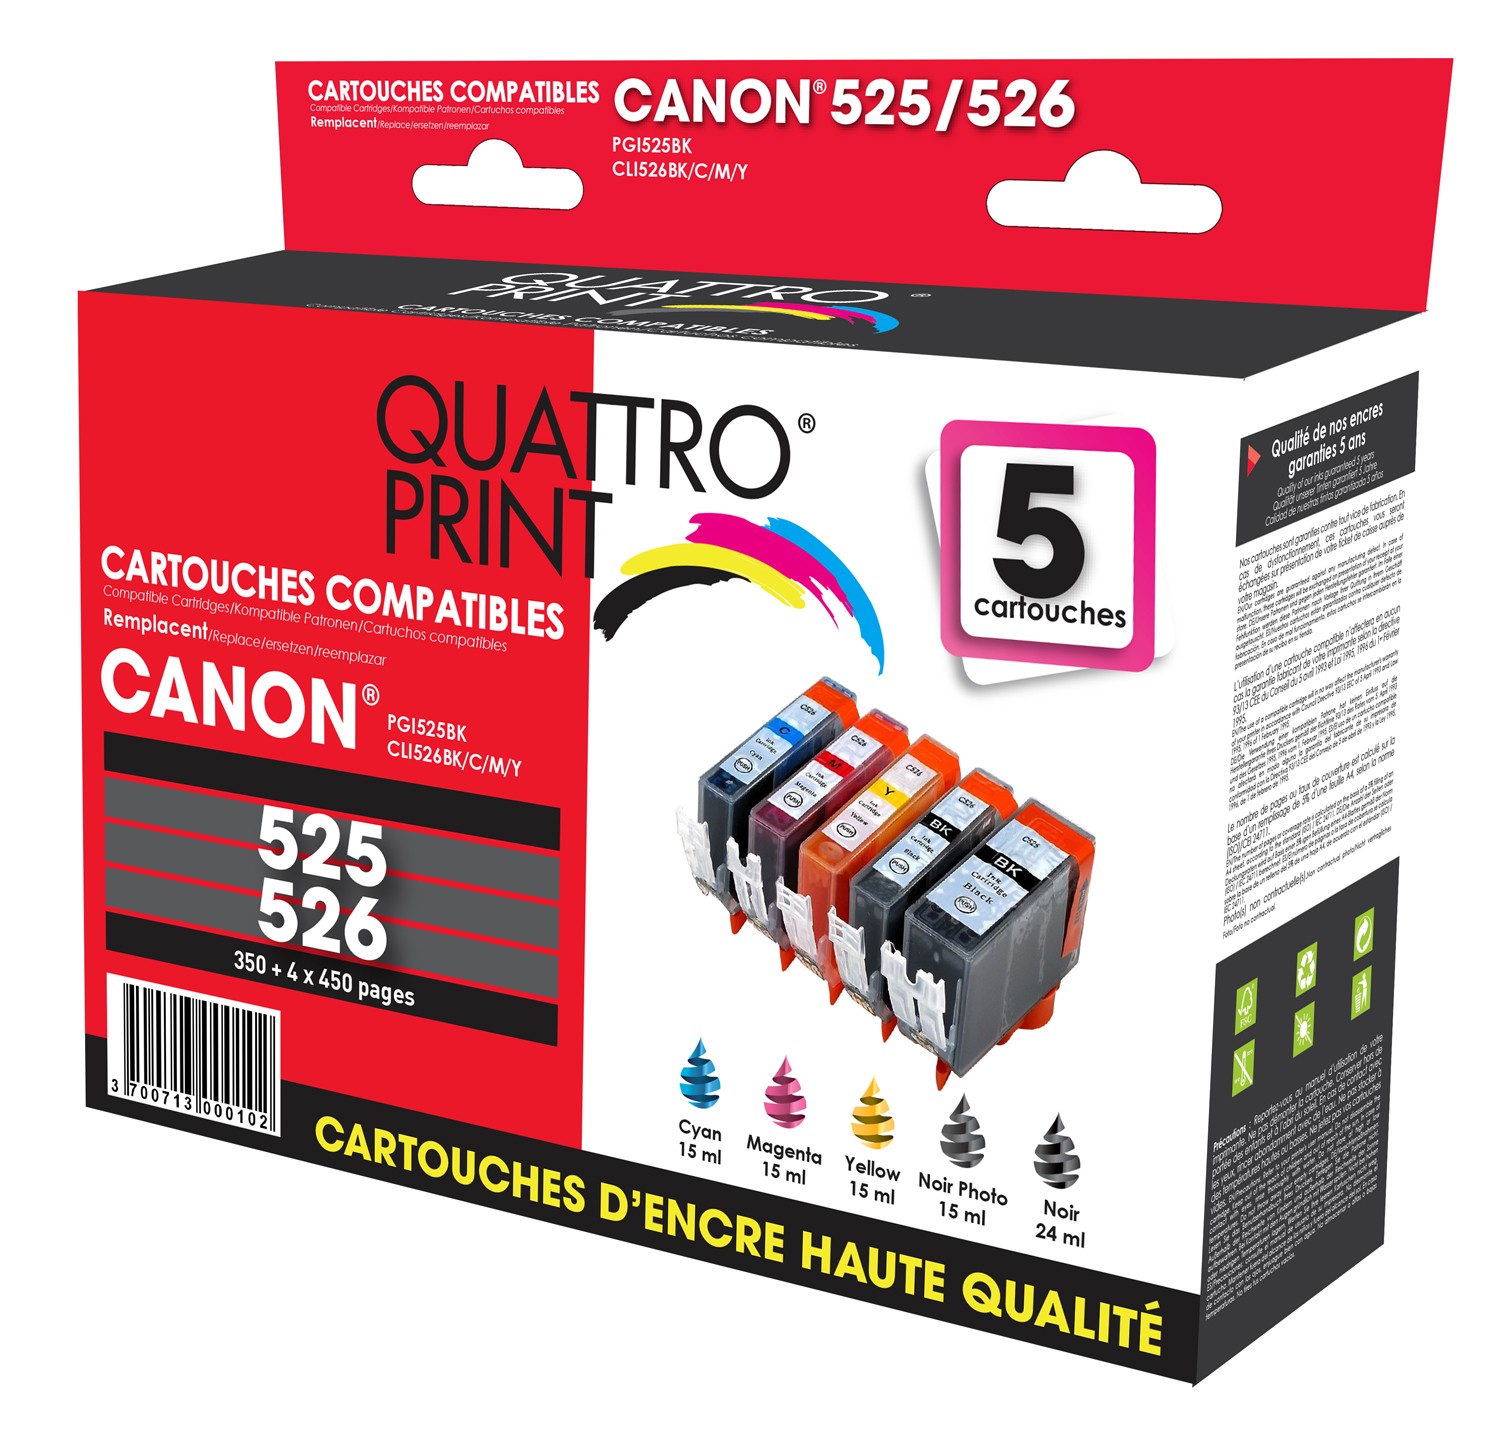 RecycleClub Cartouche compatible avec Canon PGI-525/CLI-526 Multipack